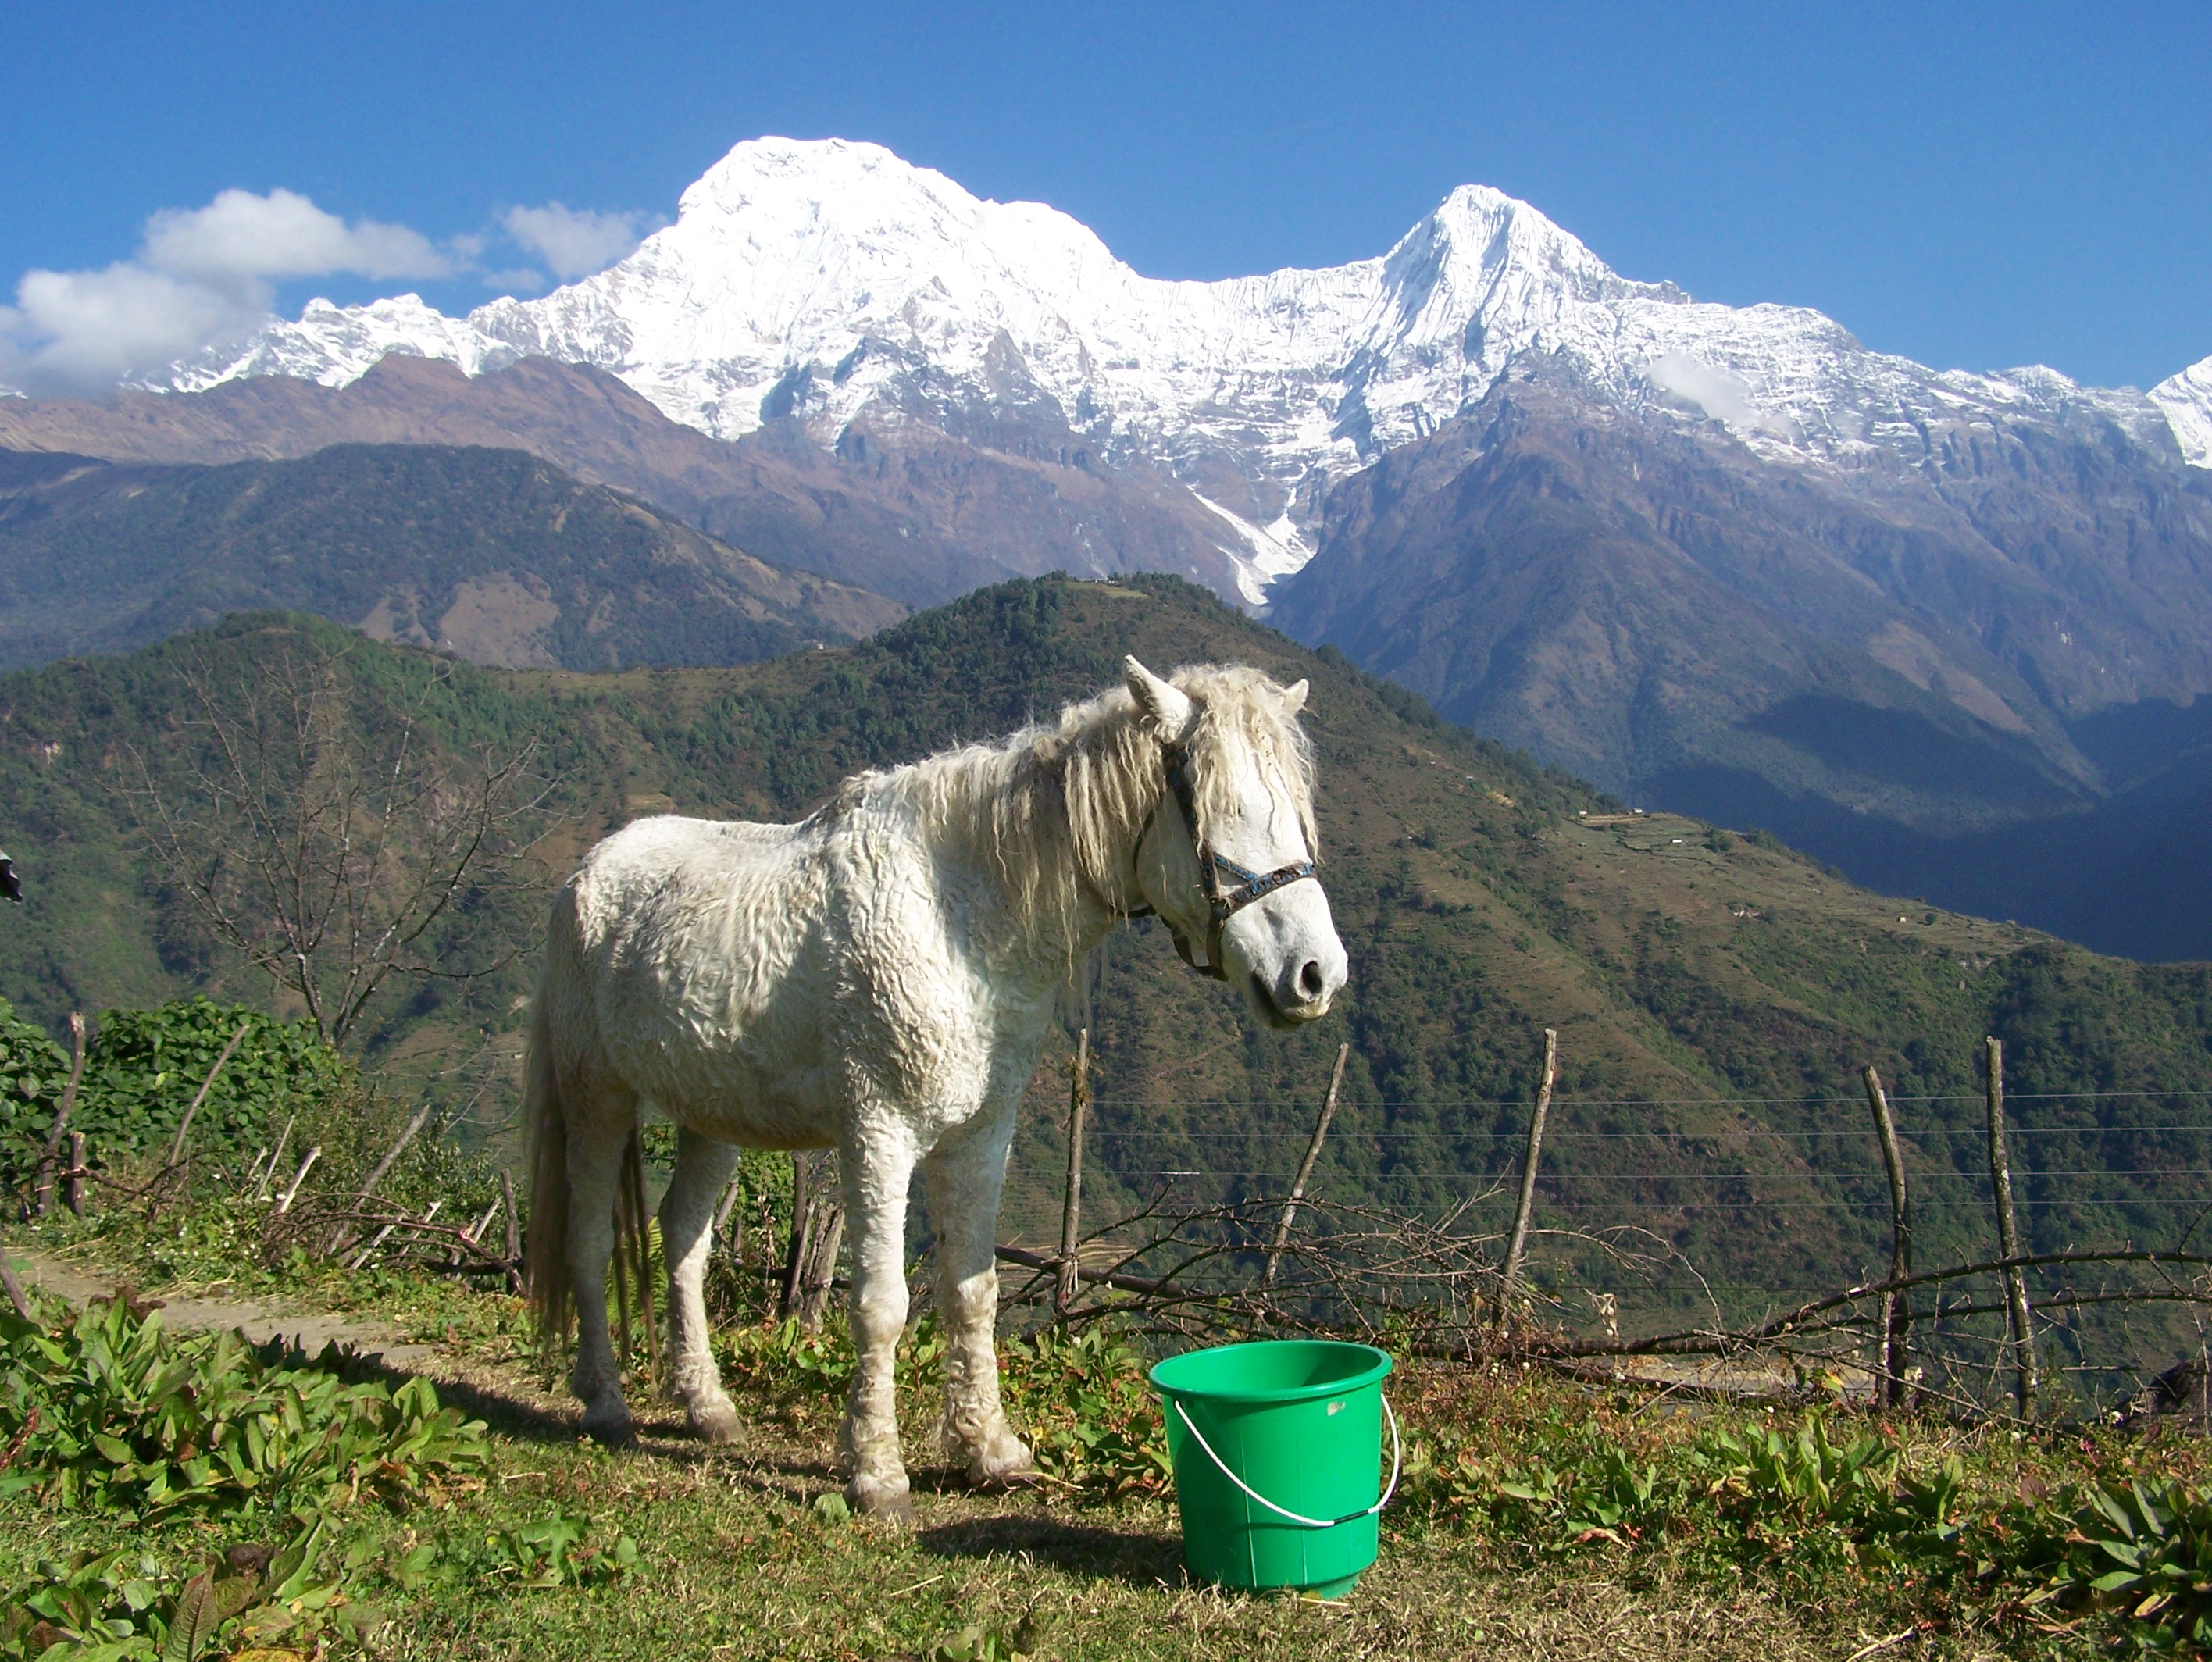 File:Nepal-mountains-and-donkey.JPG - Wikimedia Commons